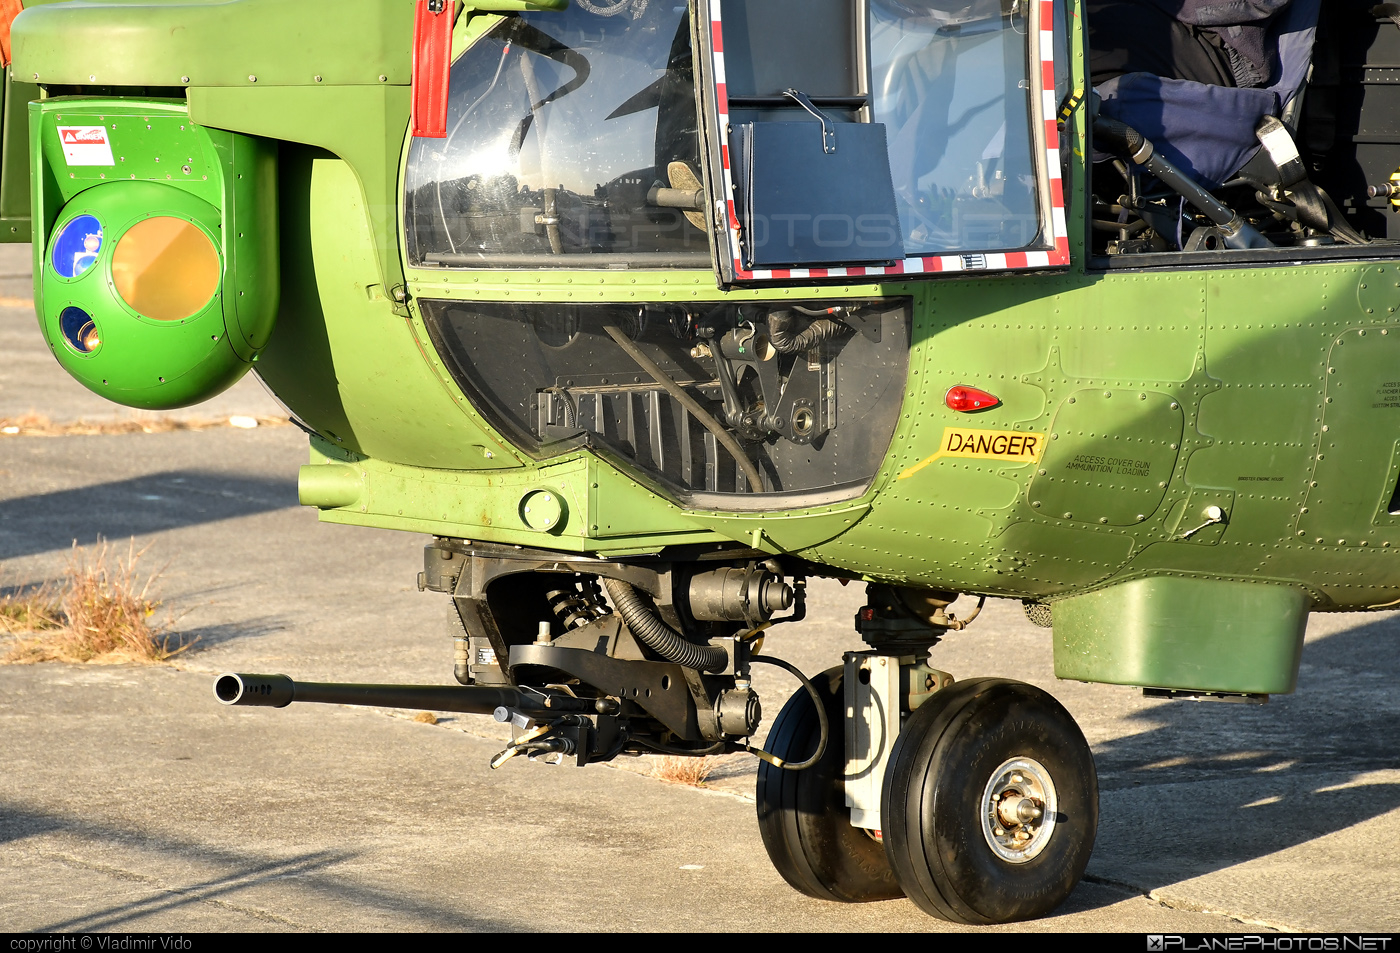 IAR 330L Puma SOCAT - 79 operated by Forţele Aeriene Române (Romanian Air Force) #forteleaerieneromane #iar #iar330 #iar330l #iar330lpuma #iar330lpumasocat #iar330puma #industriaAeronauticaRomana #romanianairforce